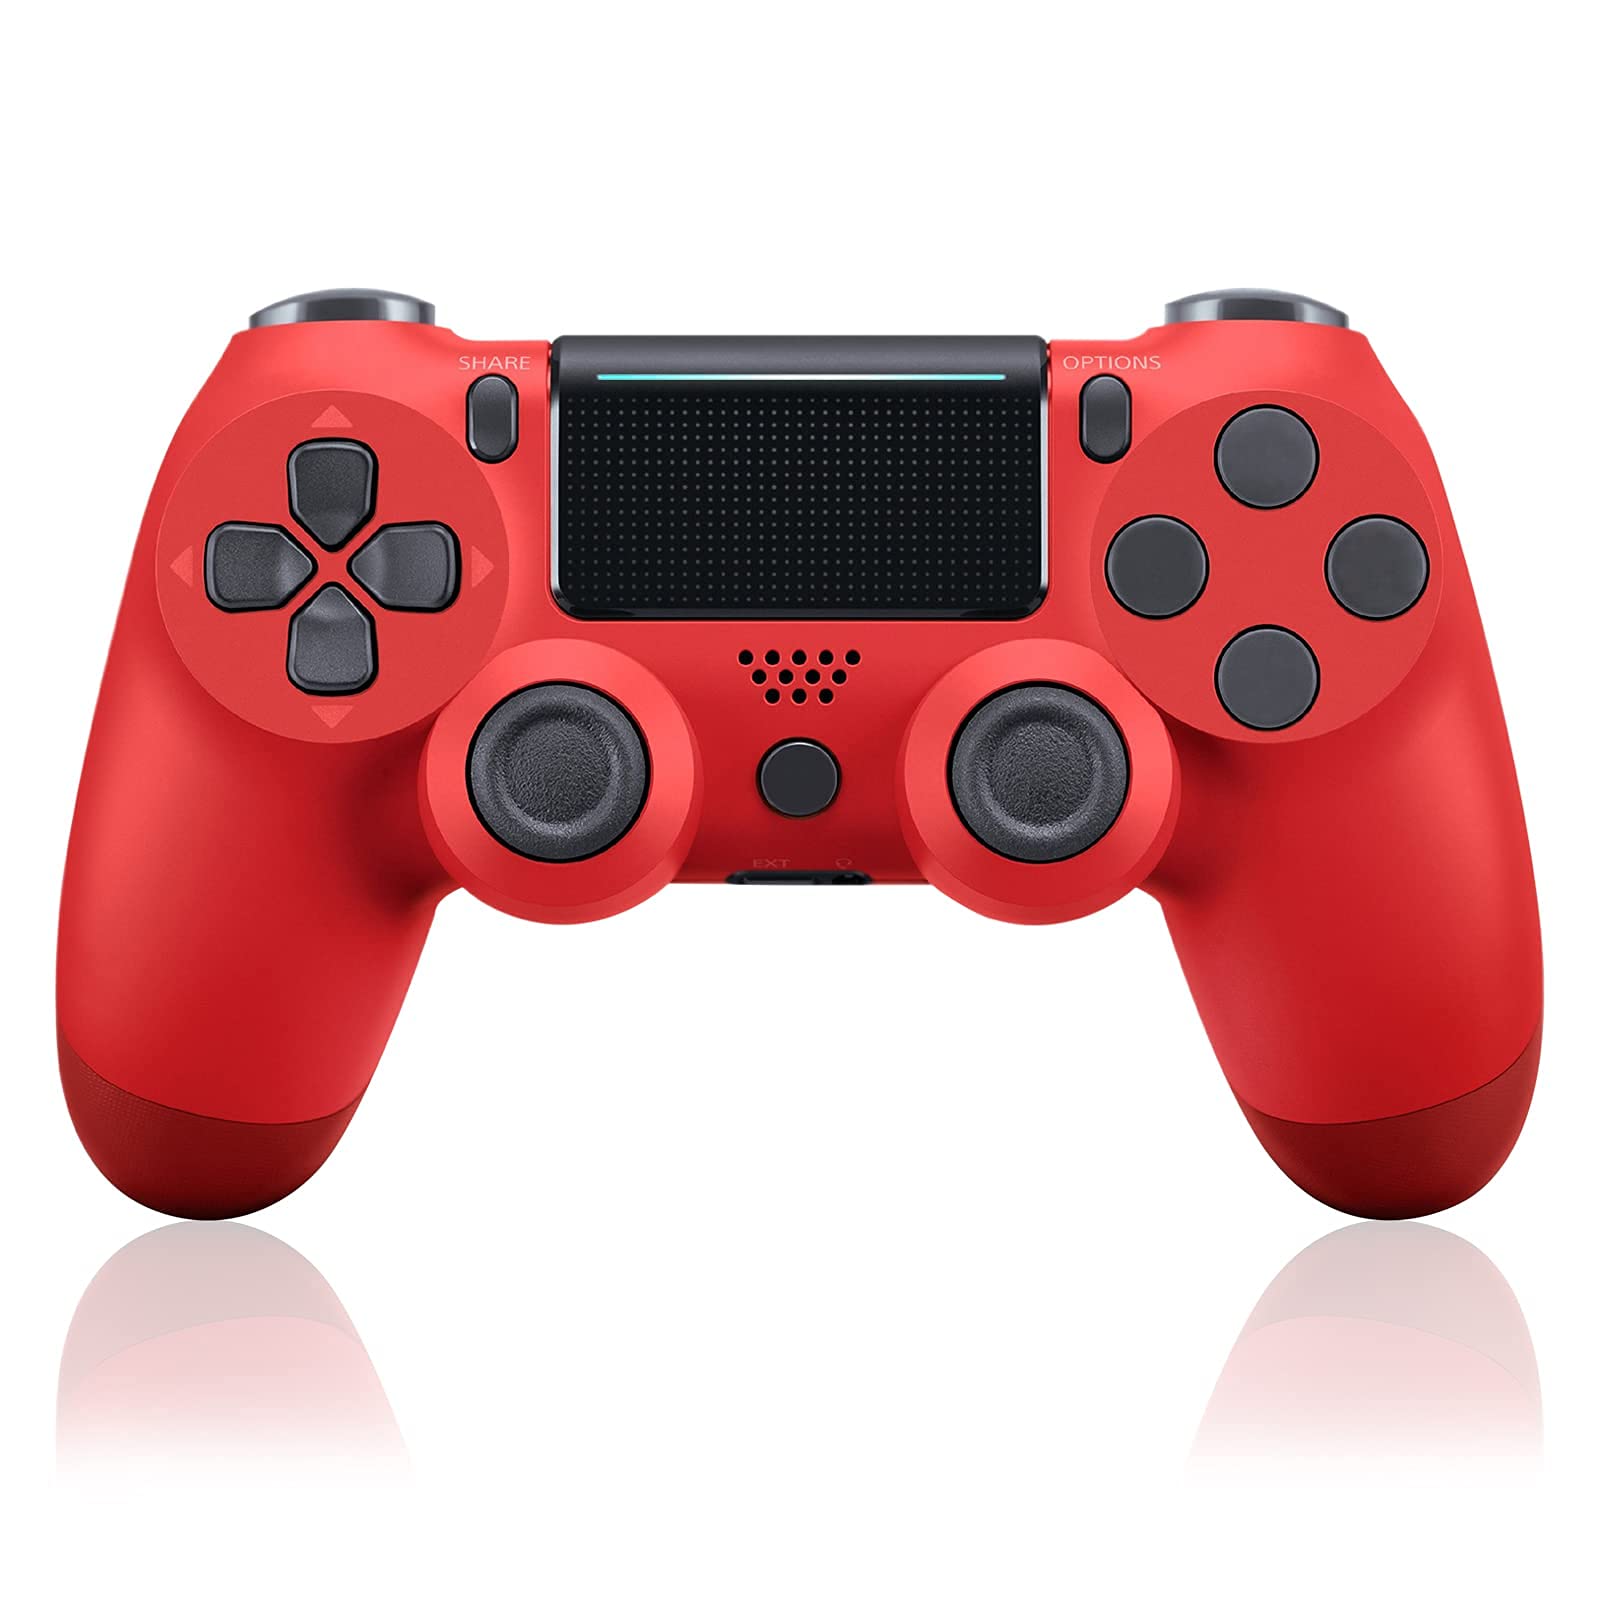 وحدة تحكم ألعاب لاسلكية تعمل بالبلوتوث لأجهزة PS4/Slim/Pro/PC/iOS/Android/Steam مع اهتزاز مزدوج، ومقبس سماعة الرأس باللون الأحمر